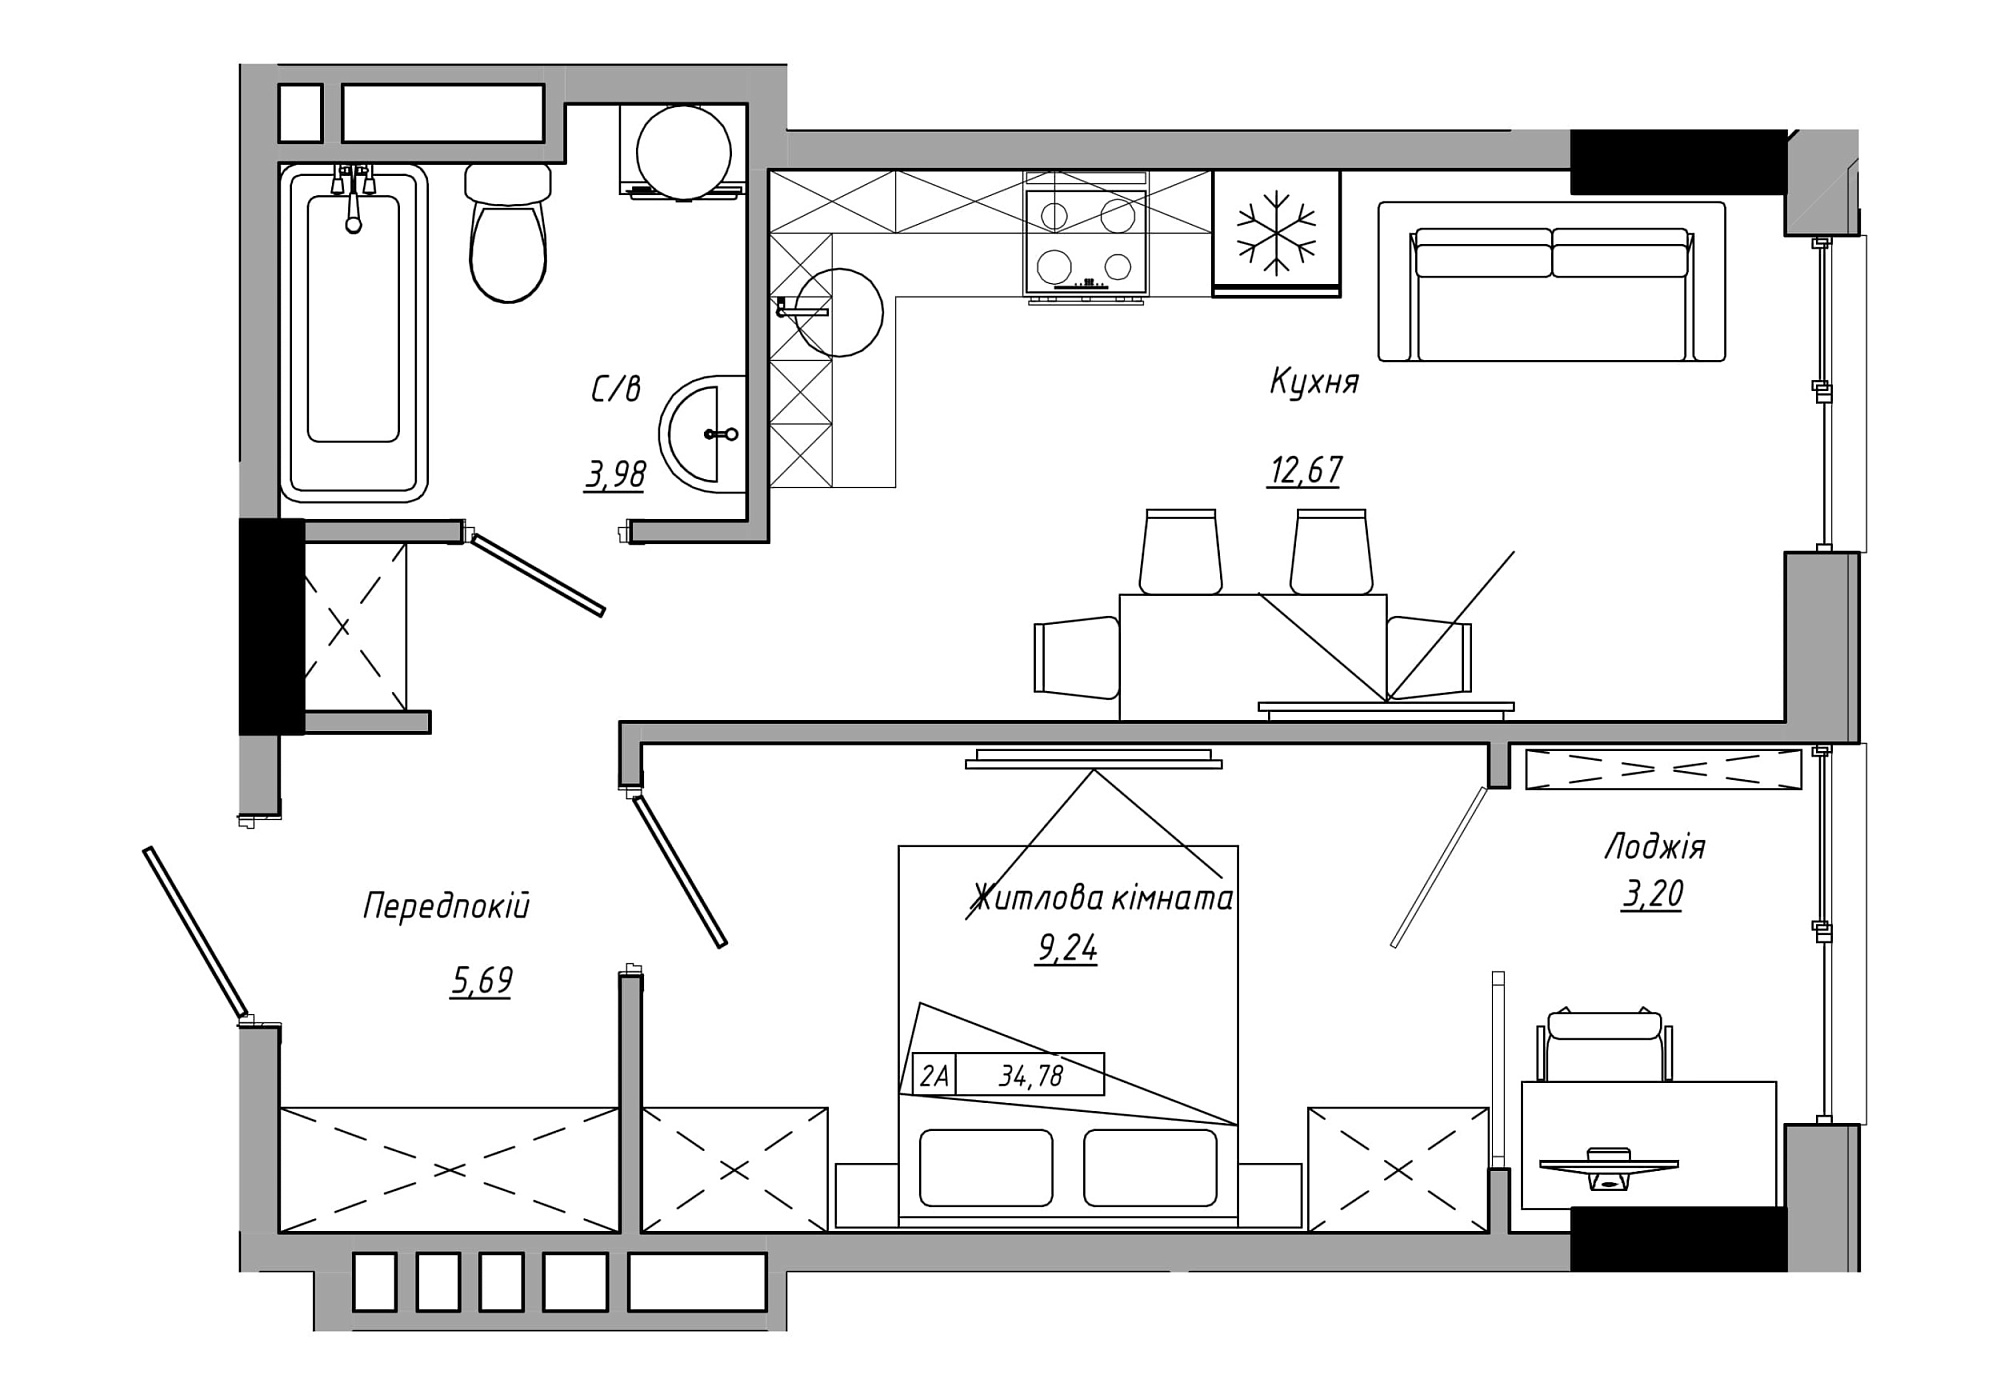 Планировка 1-к квартира площей 34.78м2, AB-21-05/00002.